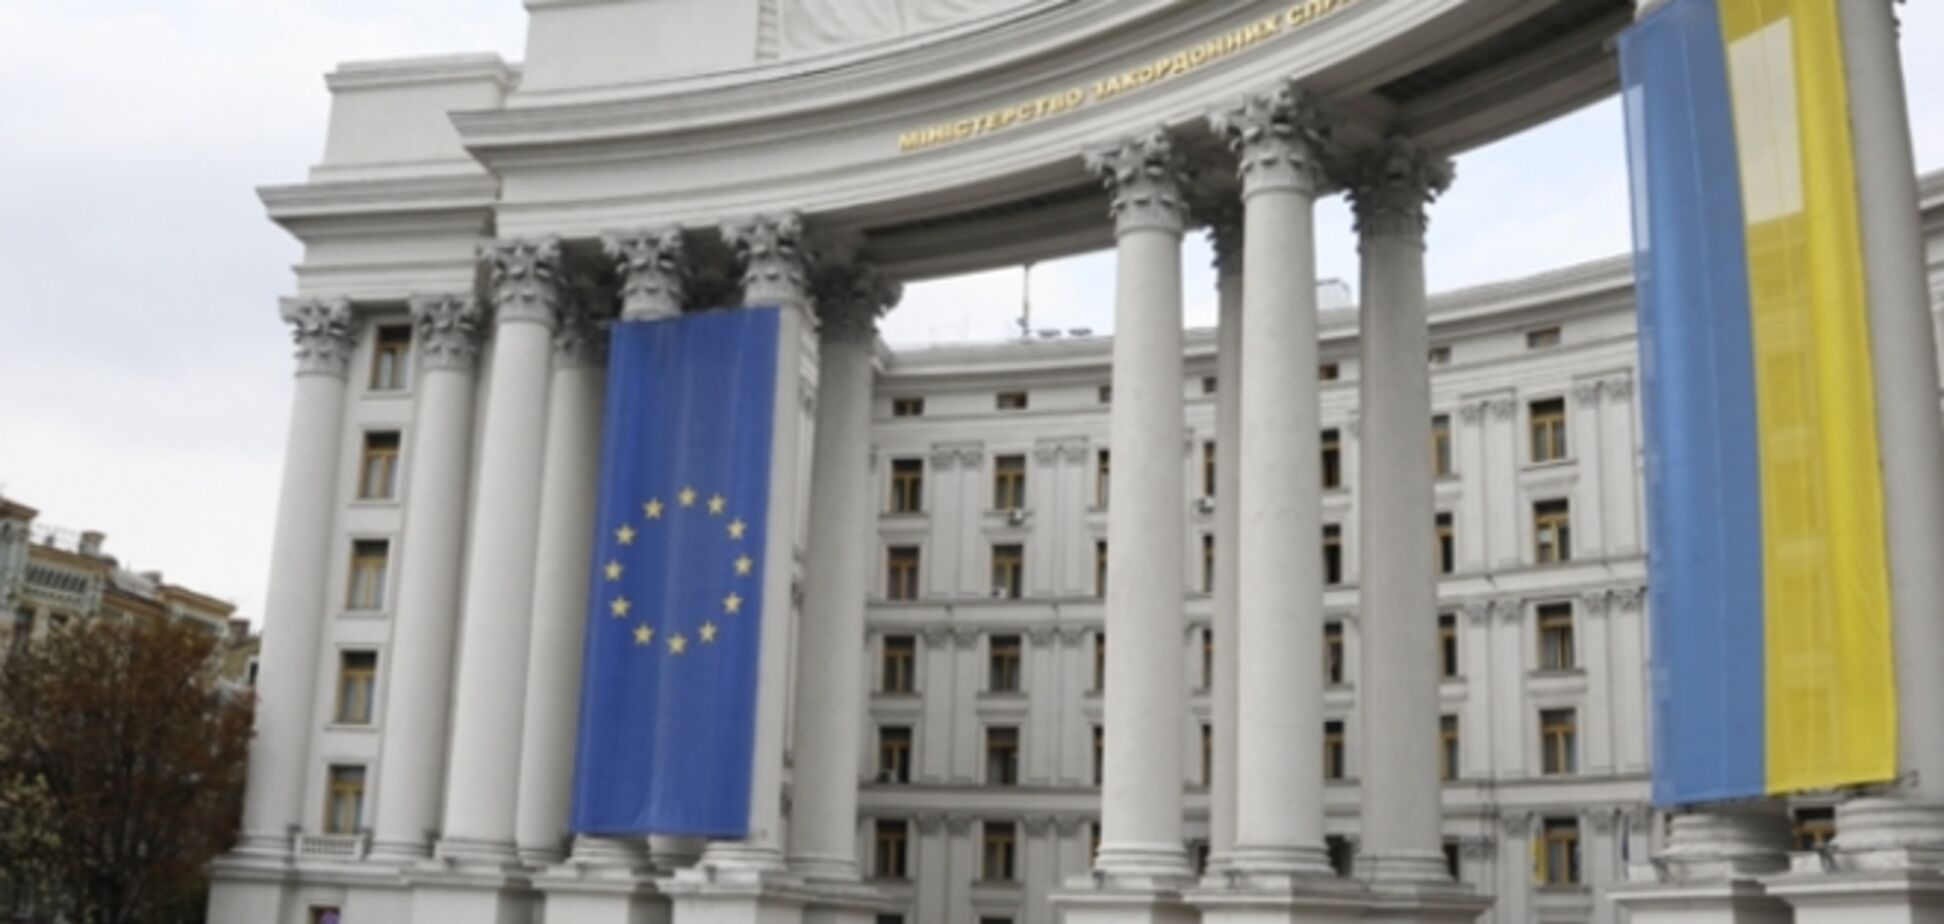 Свое участие в инаугурации президента Украины уже подтвердили 56 иностранных делегаций - МИД